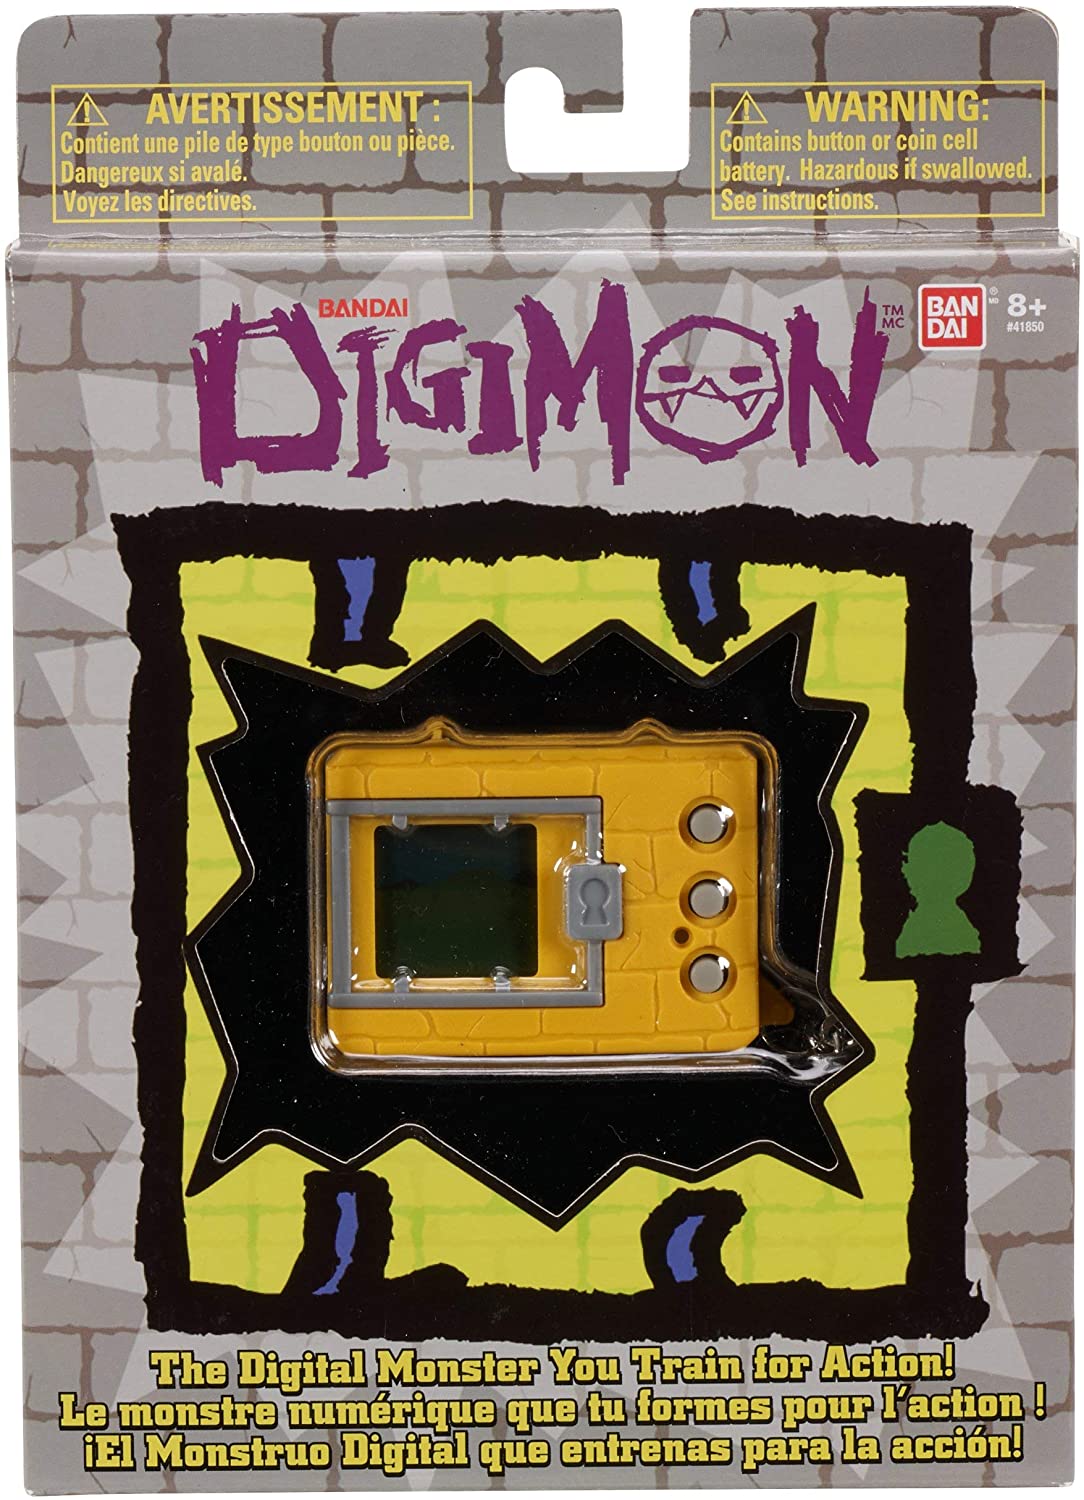 Bandai Original Digimon Digivice Virtual Pet Monster - Brick